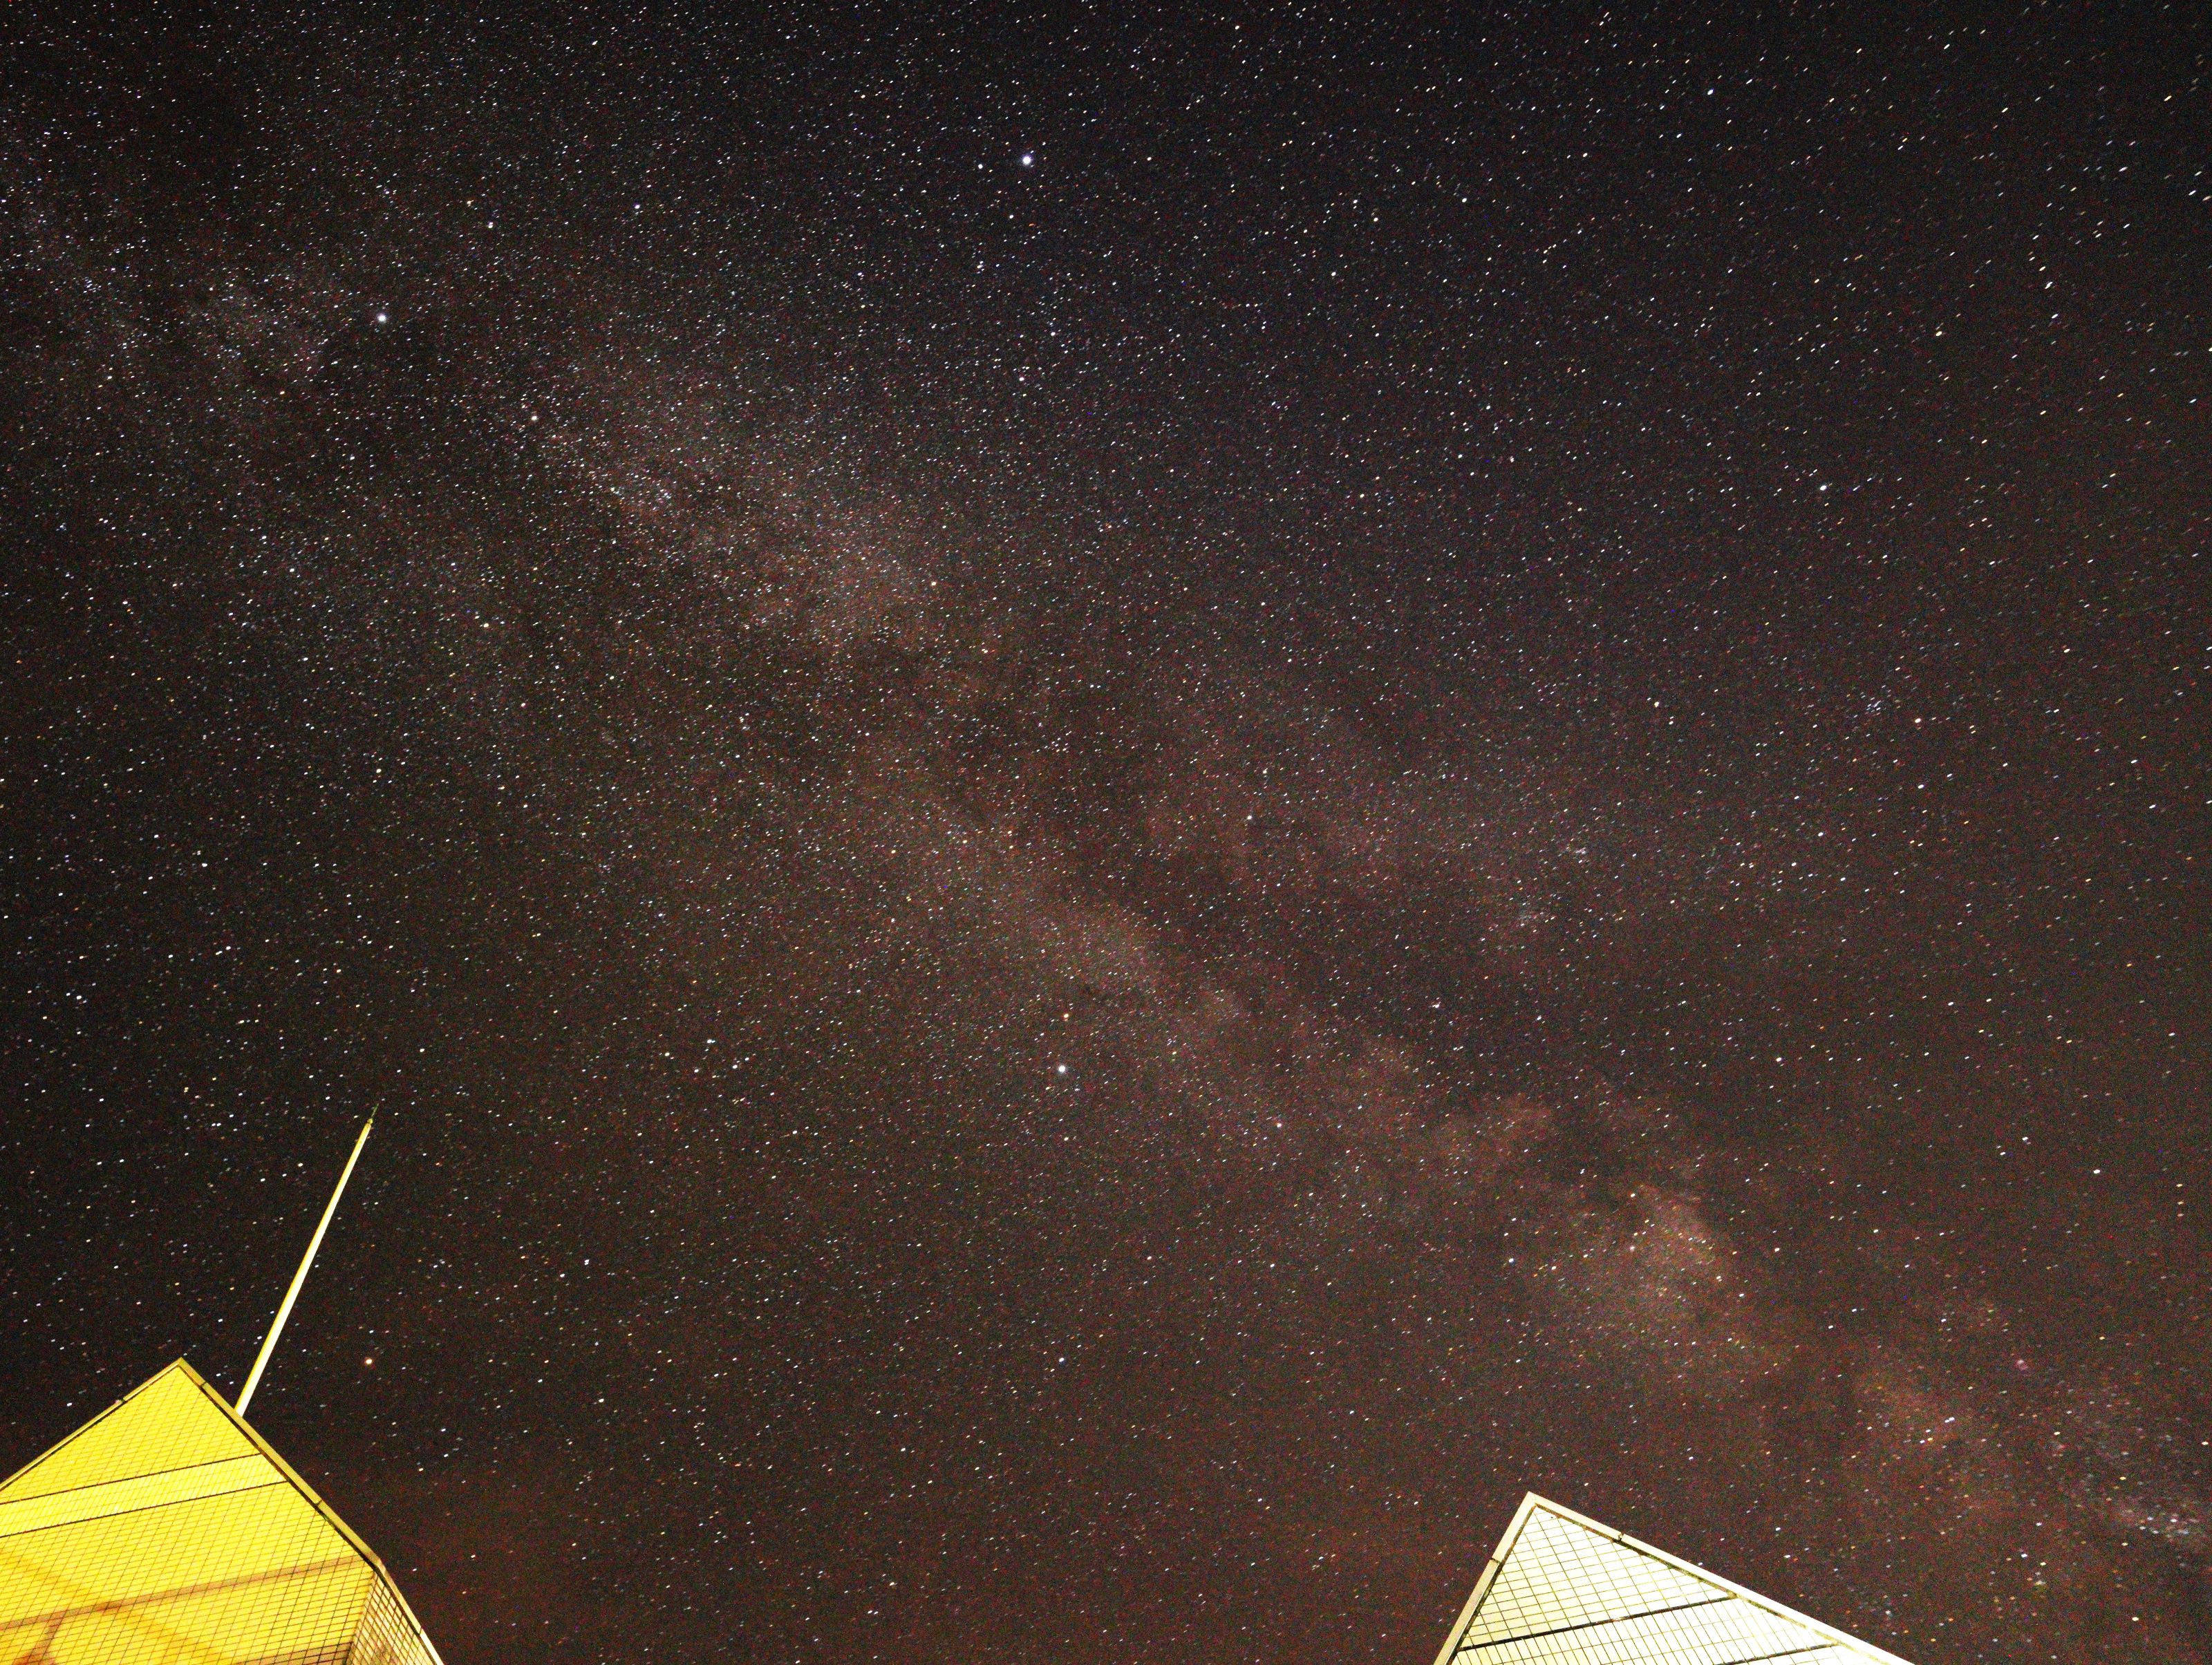 「芦別温泉スターライトホテル」で生まれて初めて星景写真に挑戦。天の川が撮影できた。